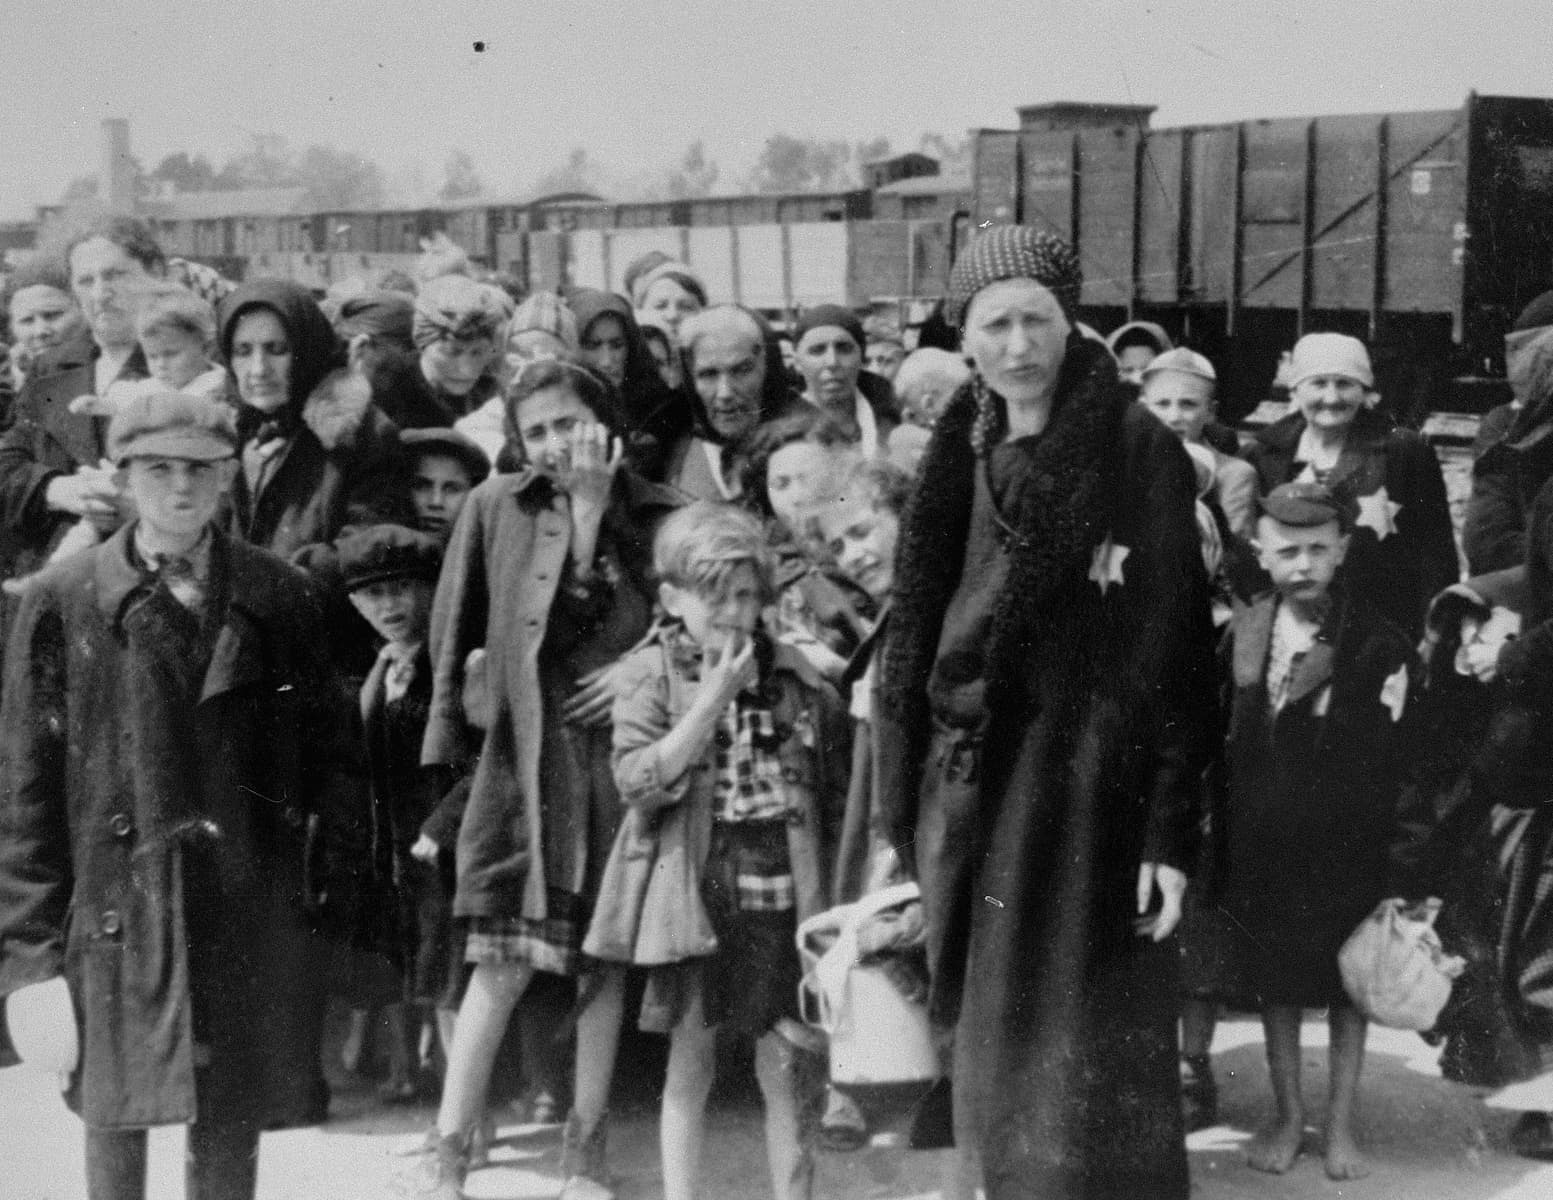 Photo: Bernhardt Walter/Ernst Hofmann. Jewish women and children from Subcarpathian Rus await selection on the ramp at Auschwitz-Birkenau. 1944. USHMM.